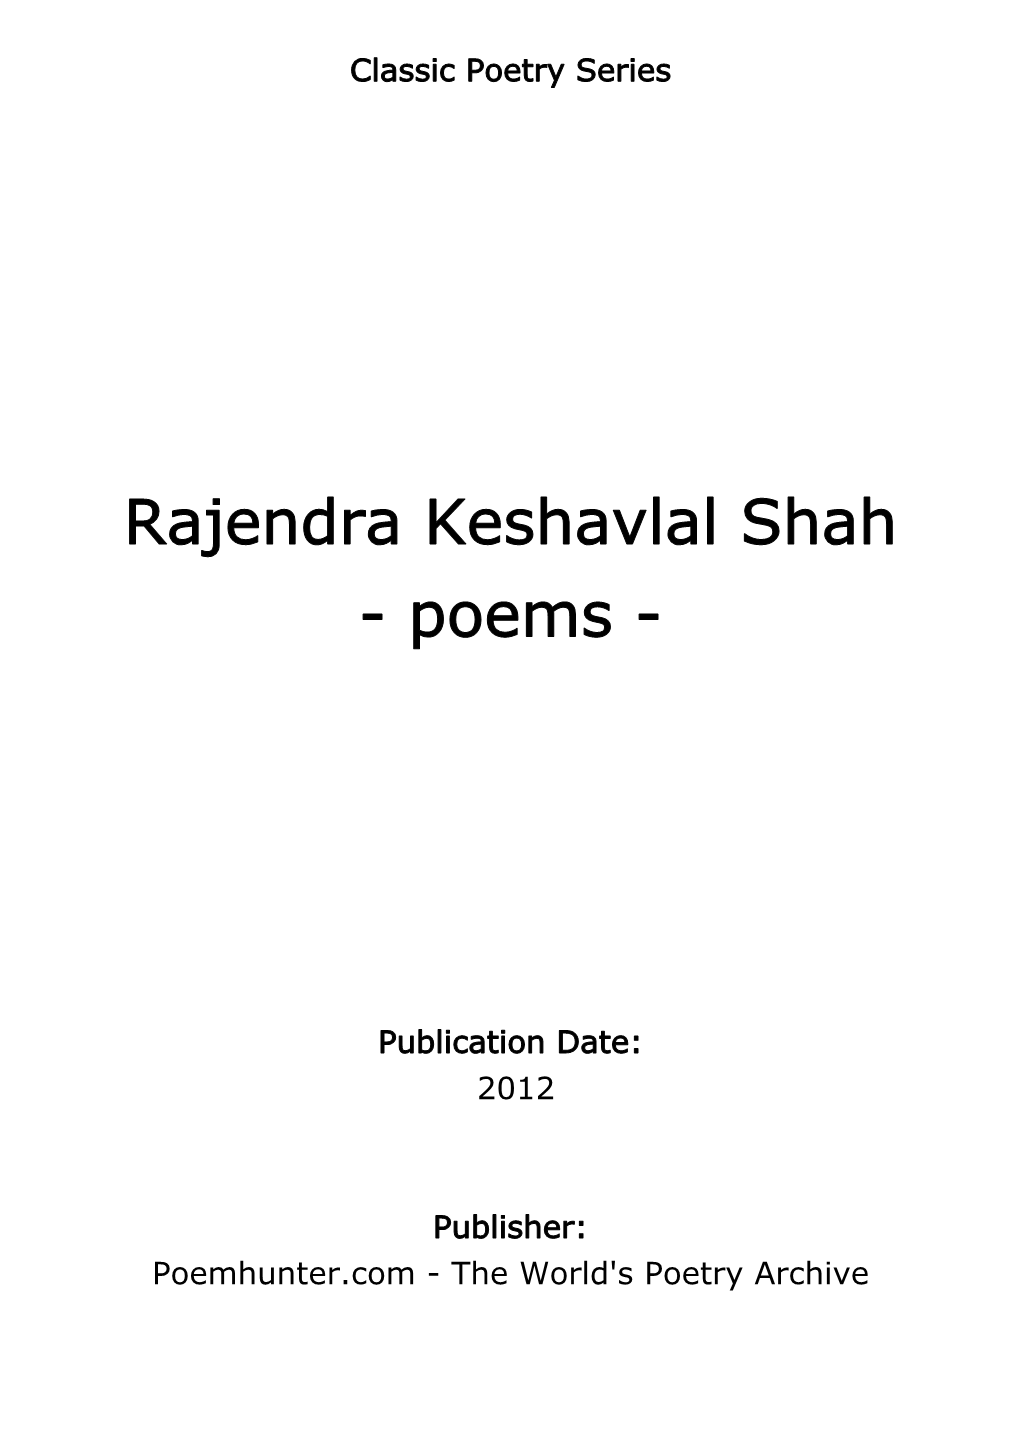 Rajendra Keshavlal Shah - Poems